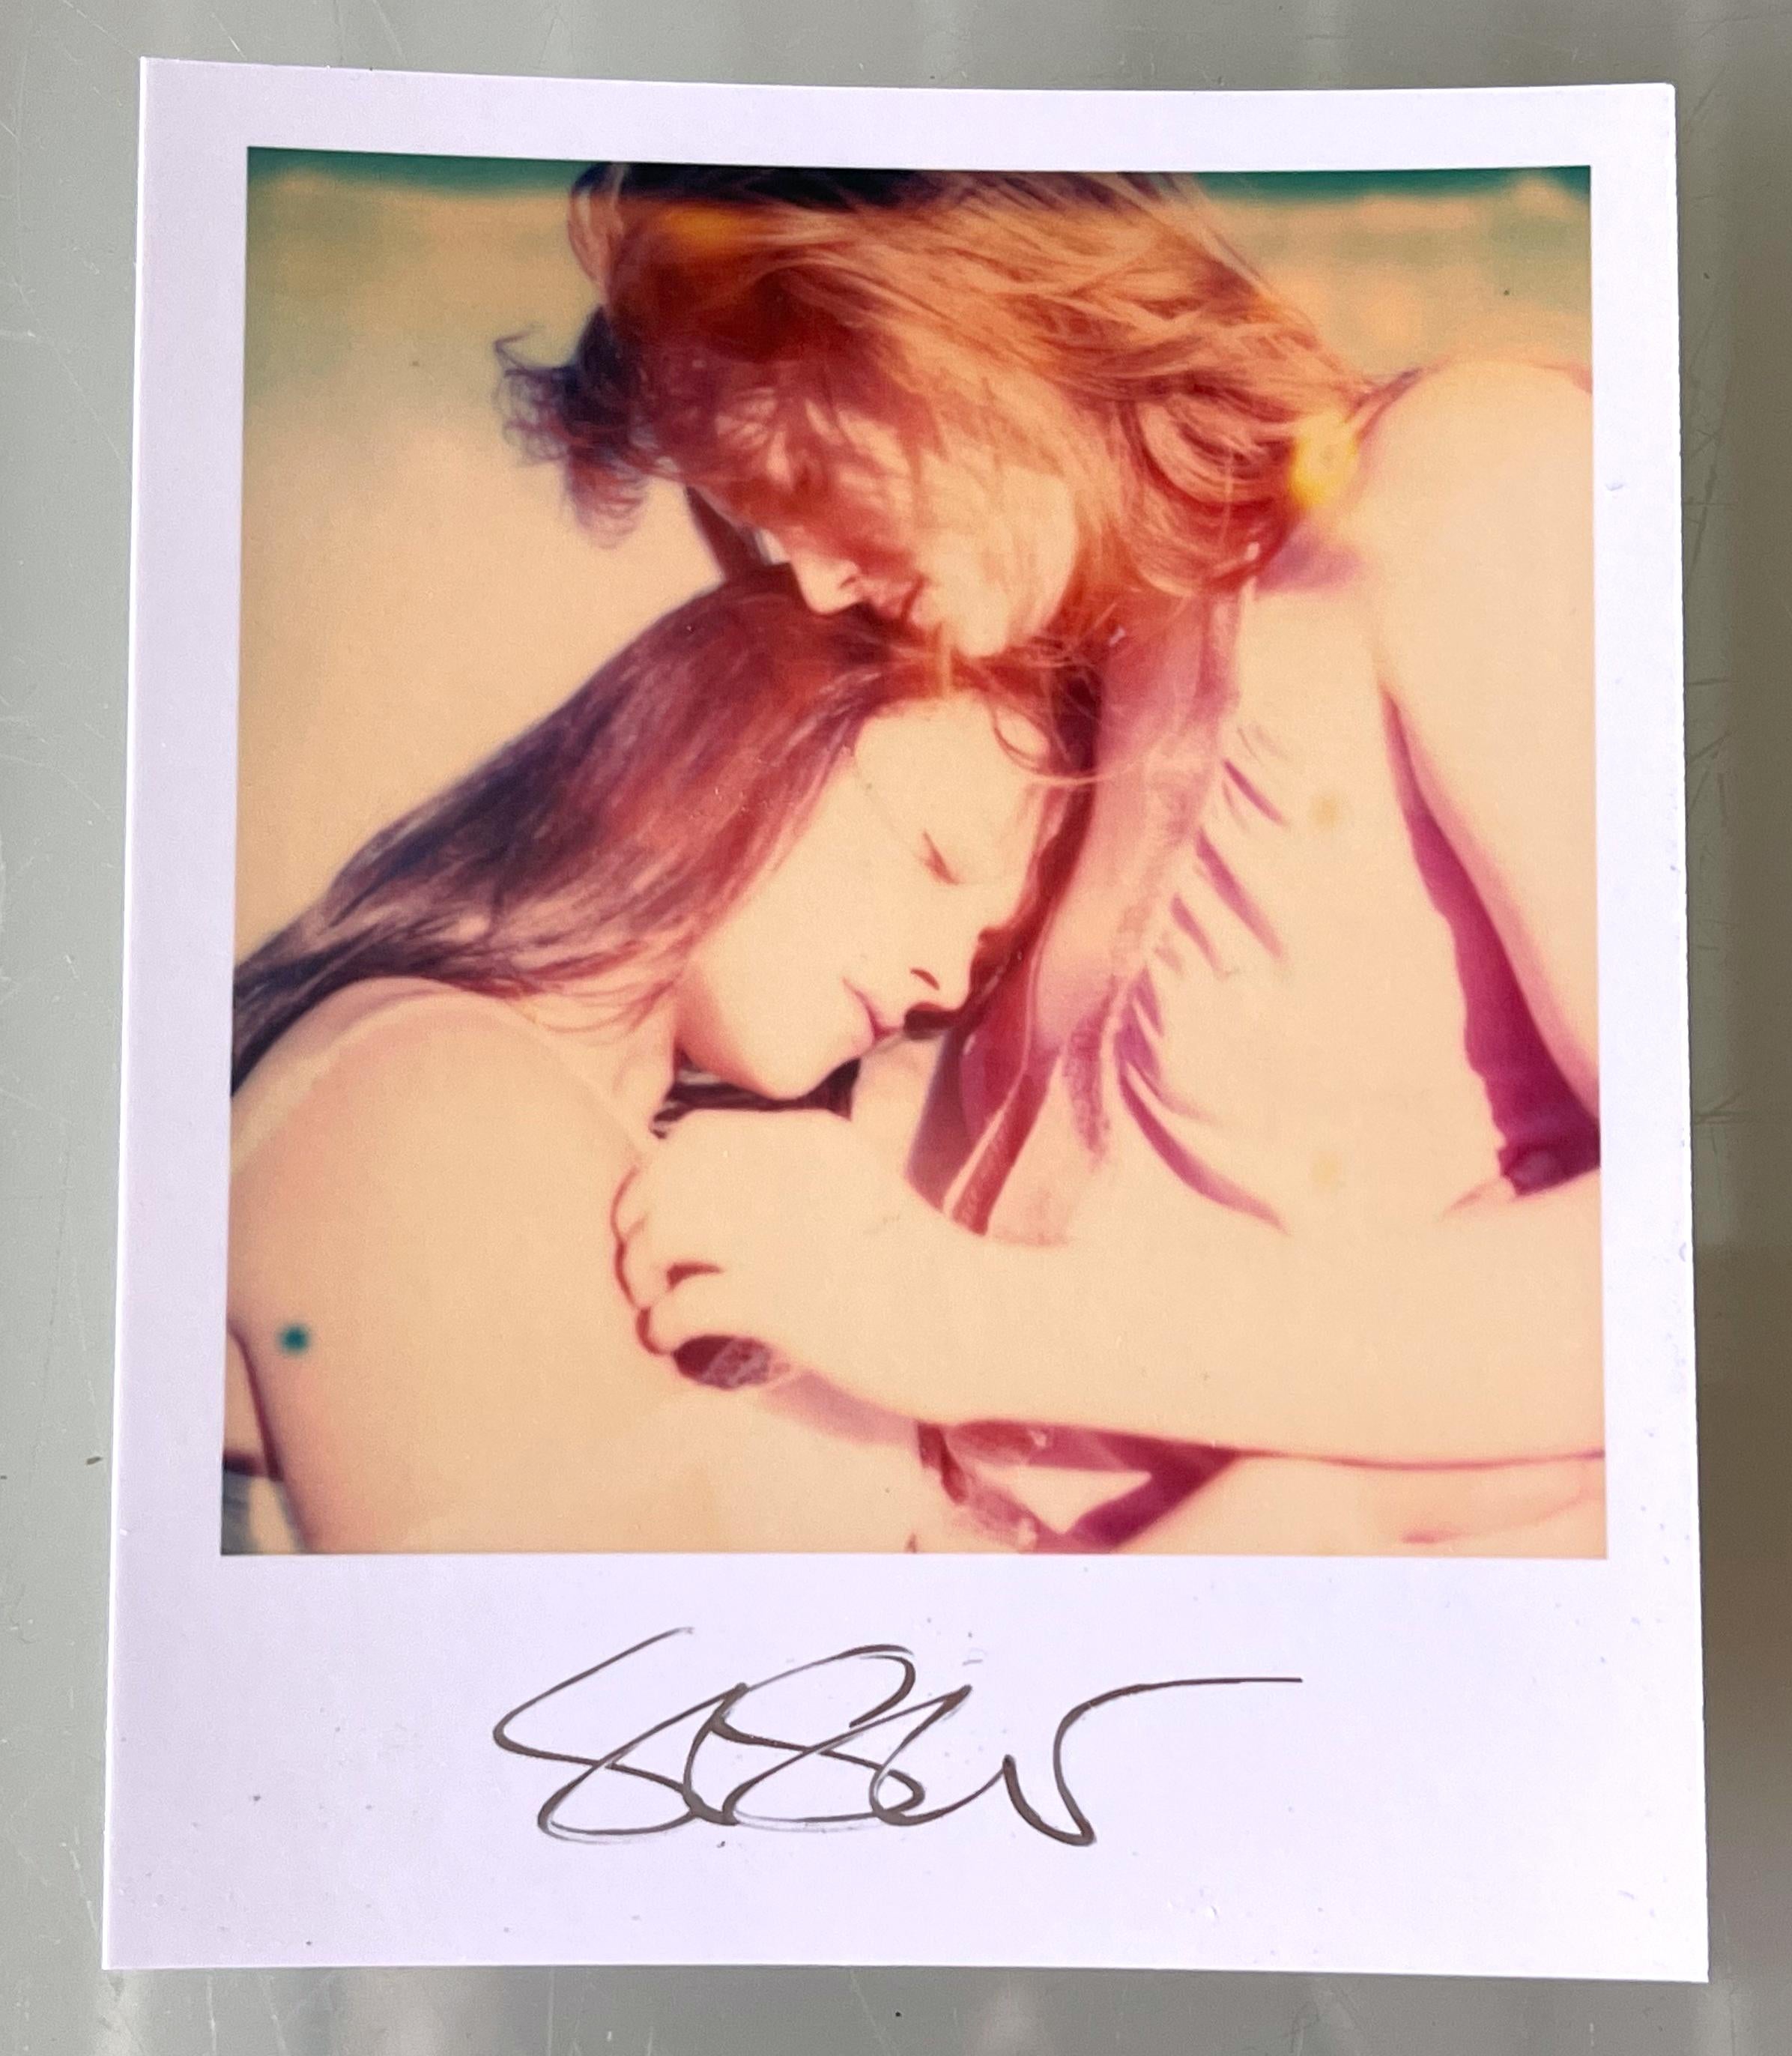 Stefanie Schneiders Mini
Rummachen im Auto (Bis dass der Tod uns scheidet) - 2005
mit Daisy McCrackin & Austin Tate

vorne signiert, nicht montiert. 
Digitale Farbfotografien auf der Grundlage eines Polaroids. 

Offene Editionen in Polaroidgröße